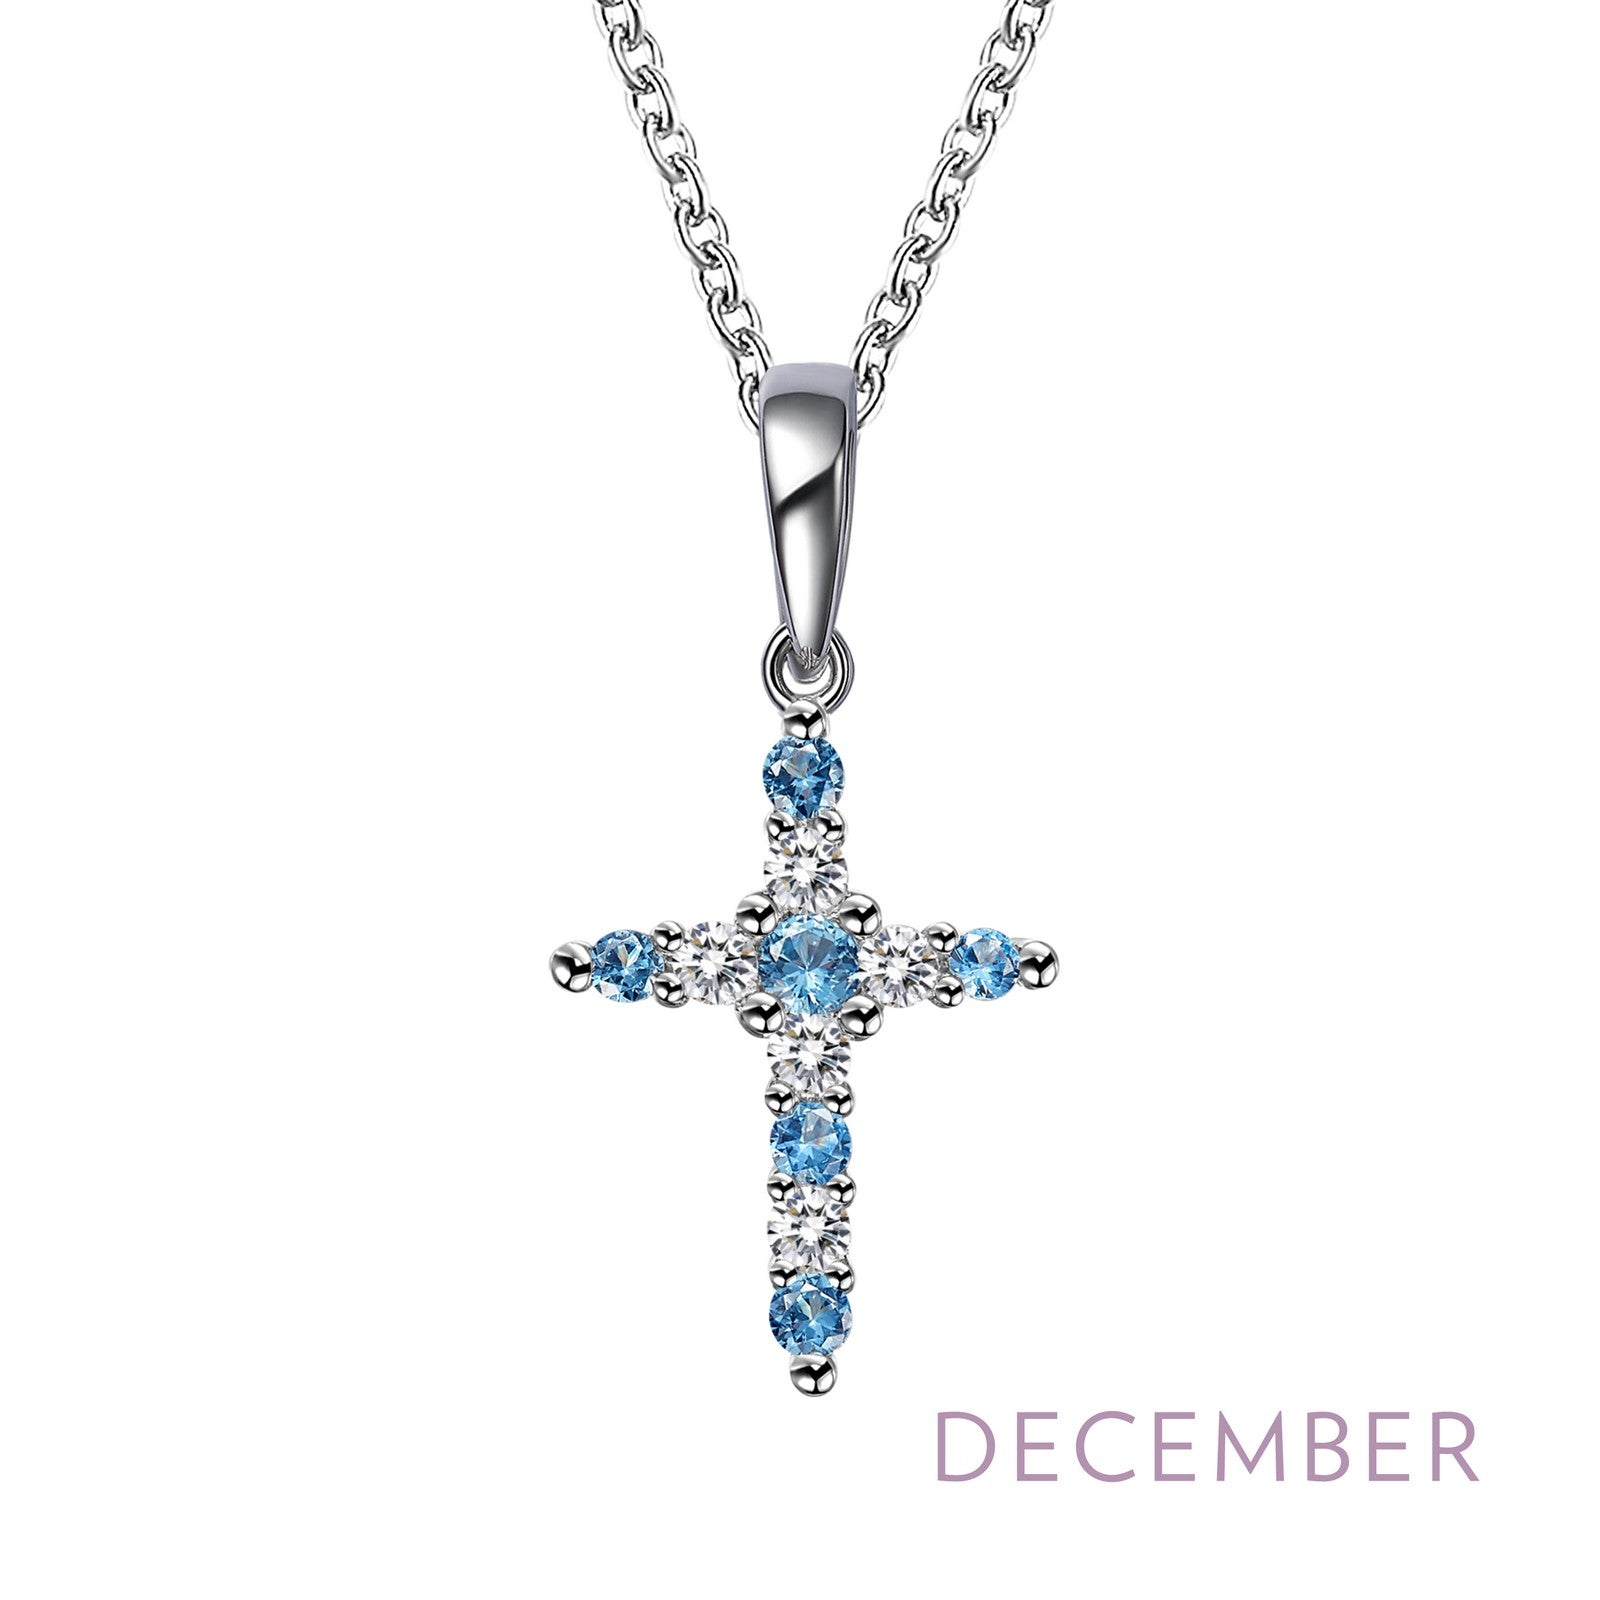 December Birthstone Necklace